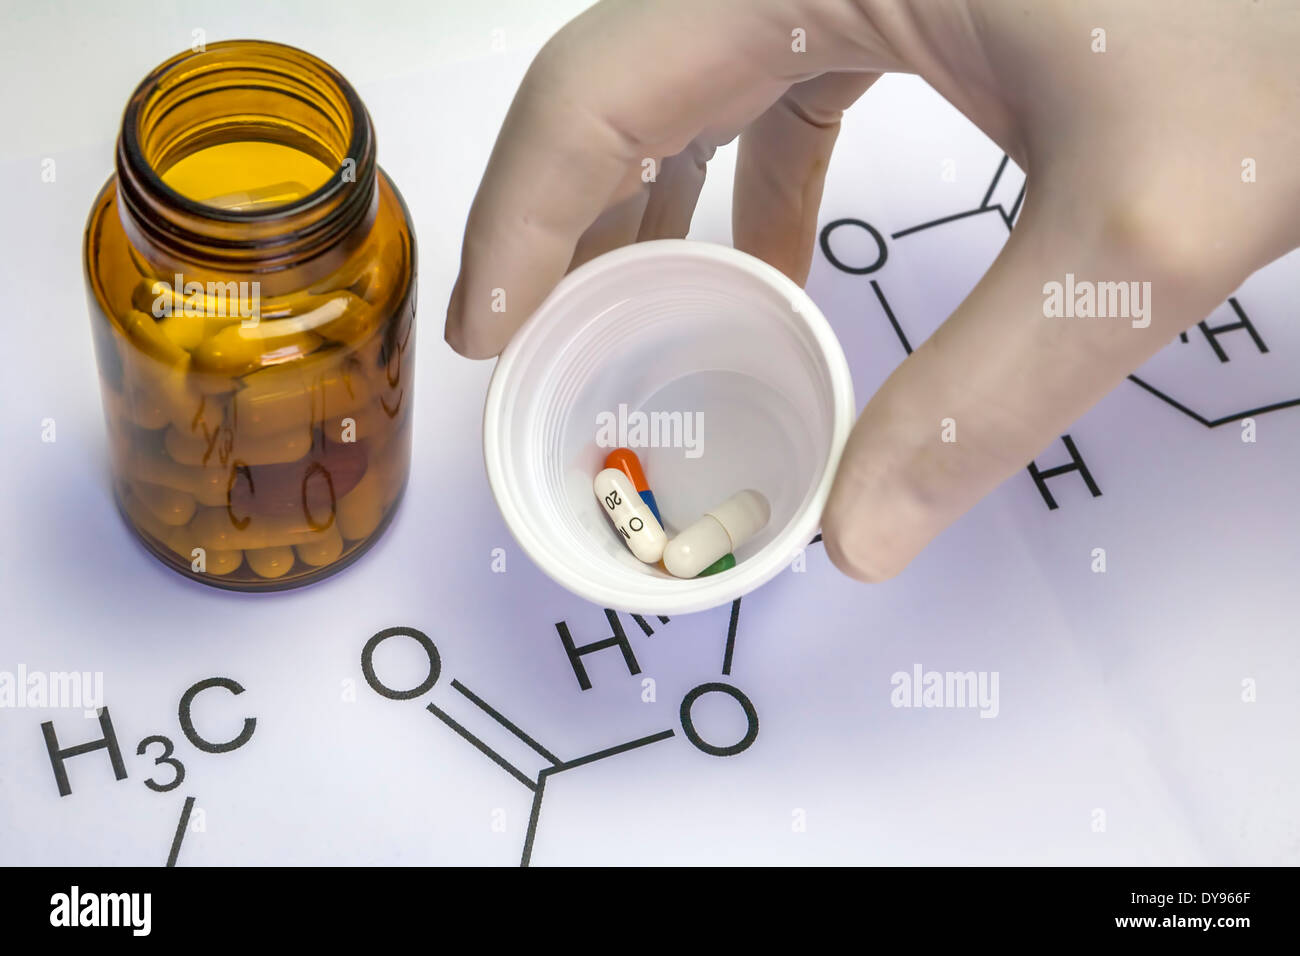 Chemie-Wissenschaft-Formel und Tabletten, Hand mit weißen Latex-Handschuh hält einen Plastikbecher mit mehreren Pillen Stockfoto